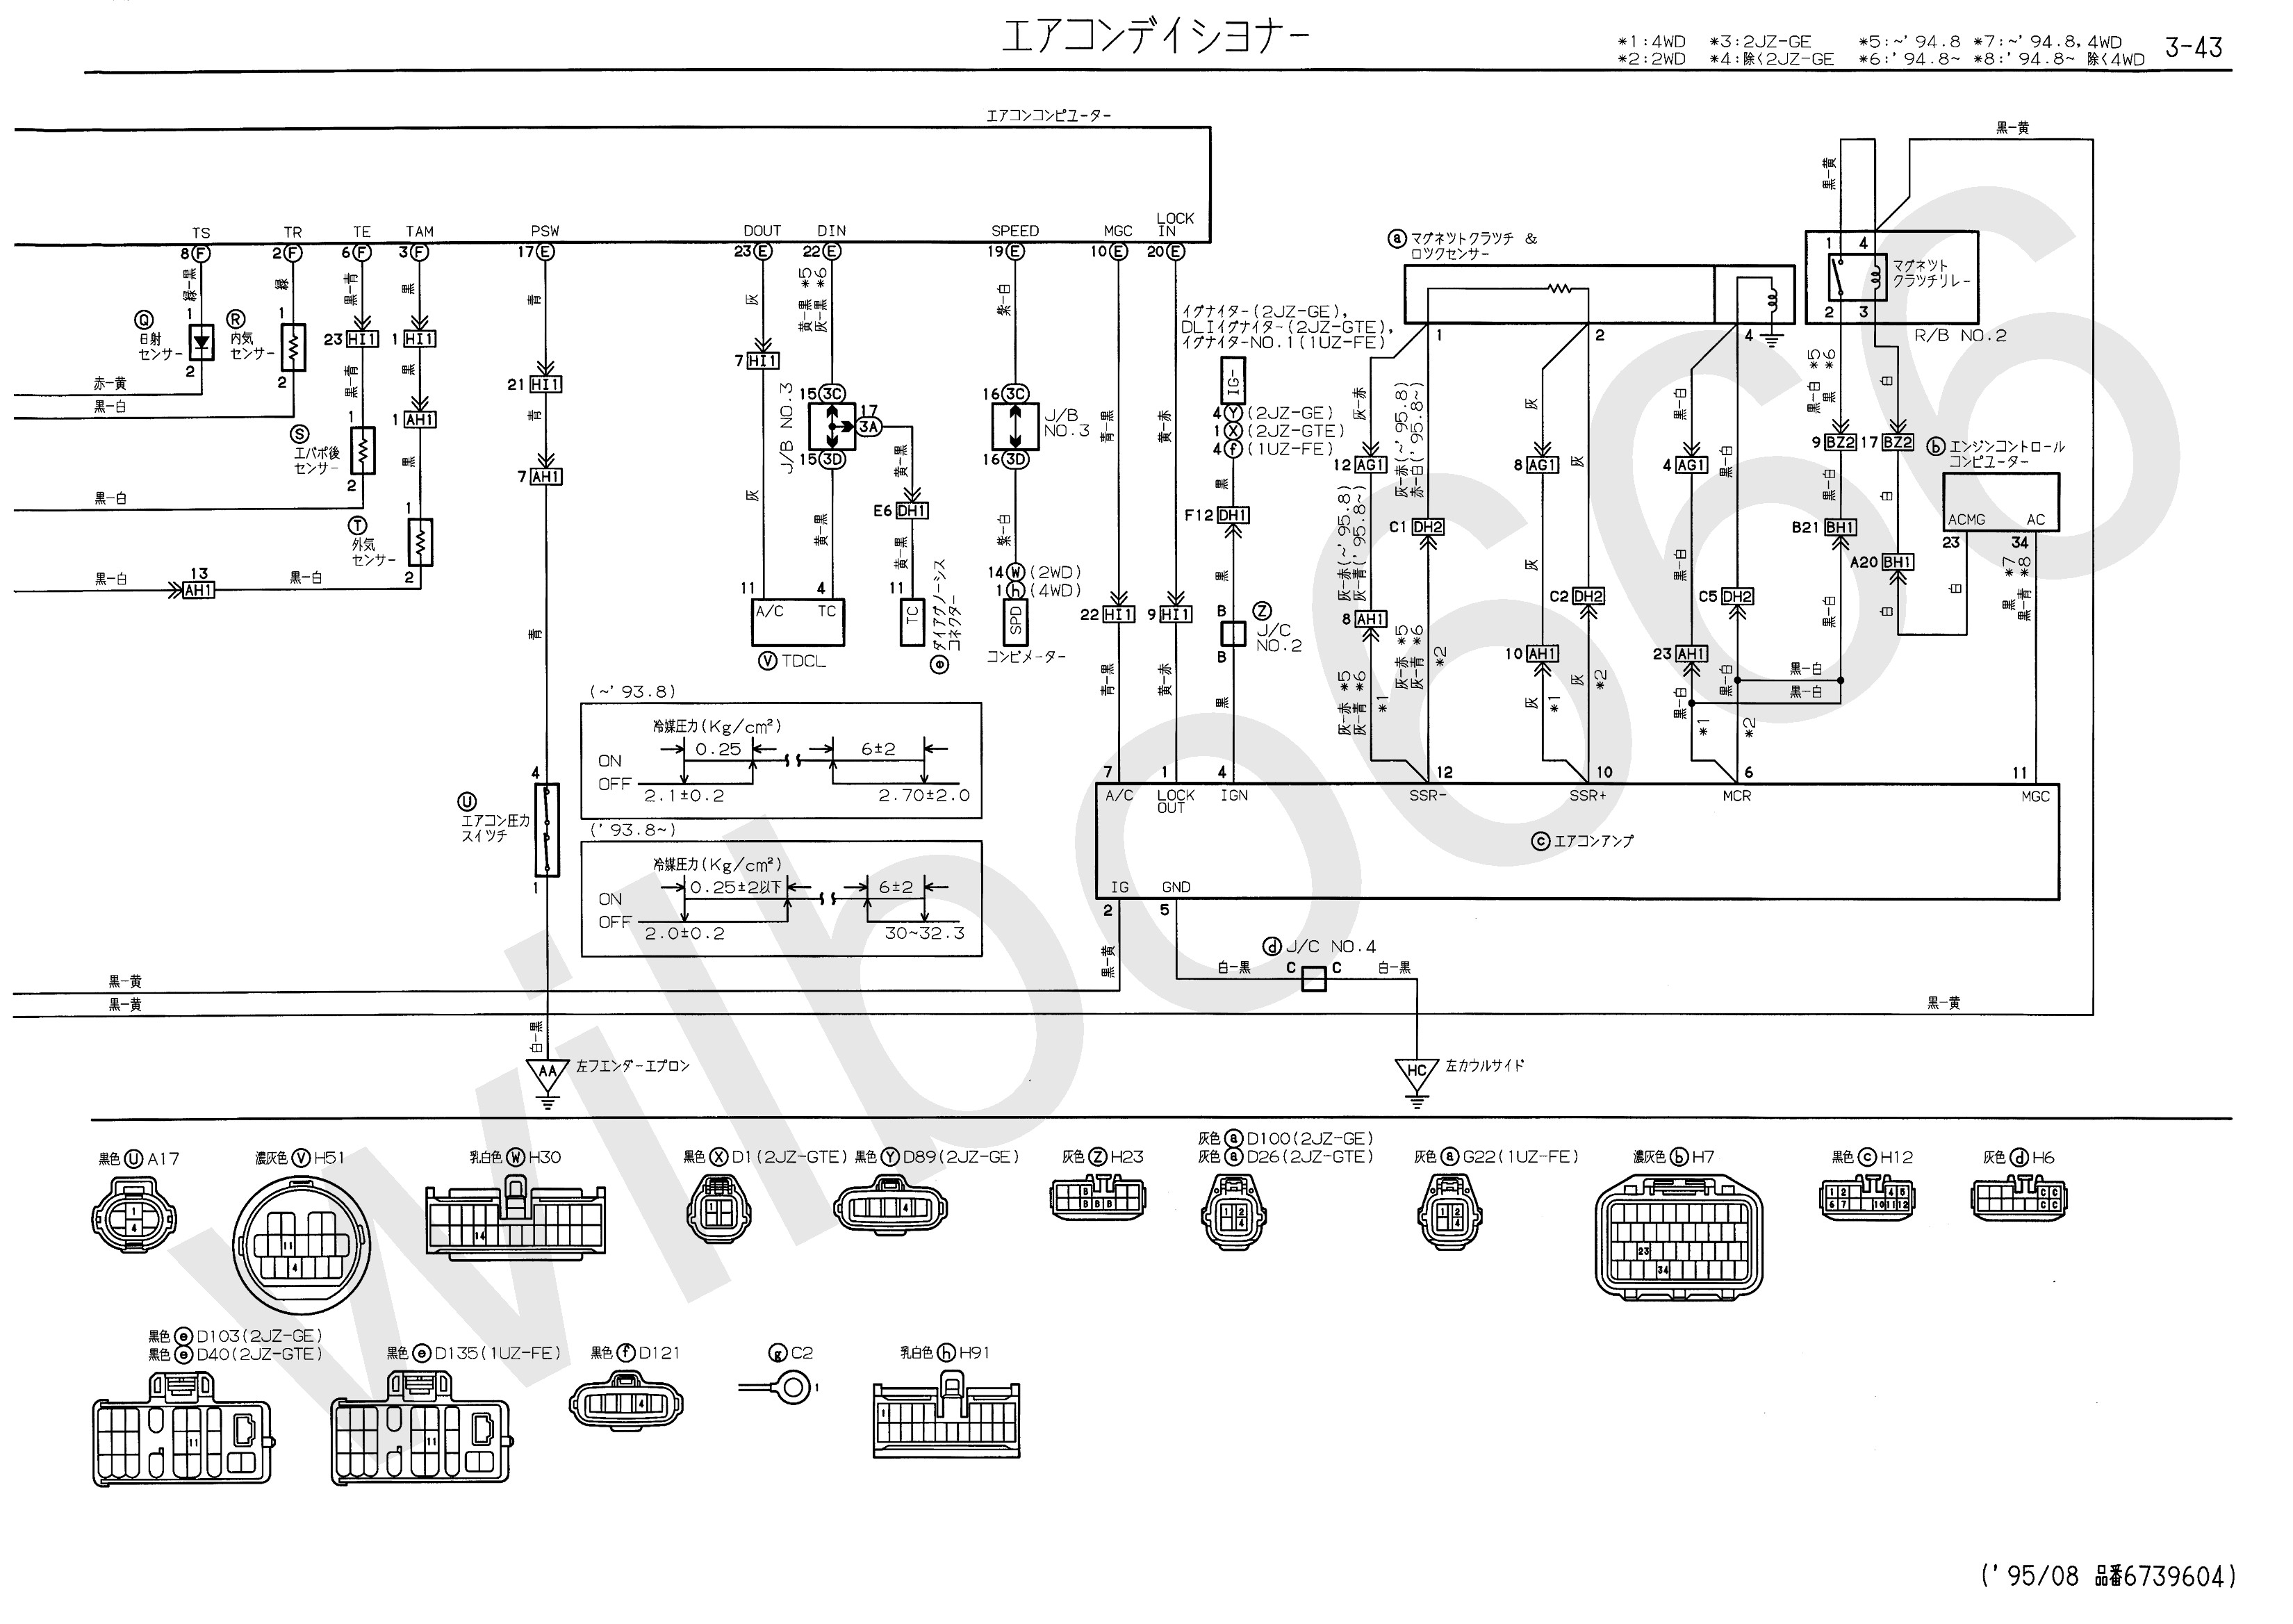 Car Engine Management System Block Diagram Wilbo666 2jz Gte Jzs147 Aristo Engine Wiring Of Car Engine Management System Block Diagram